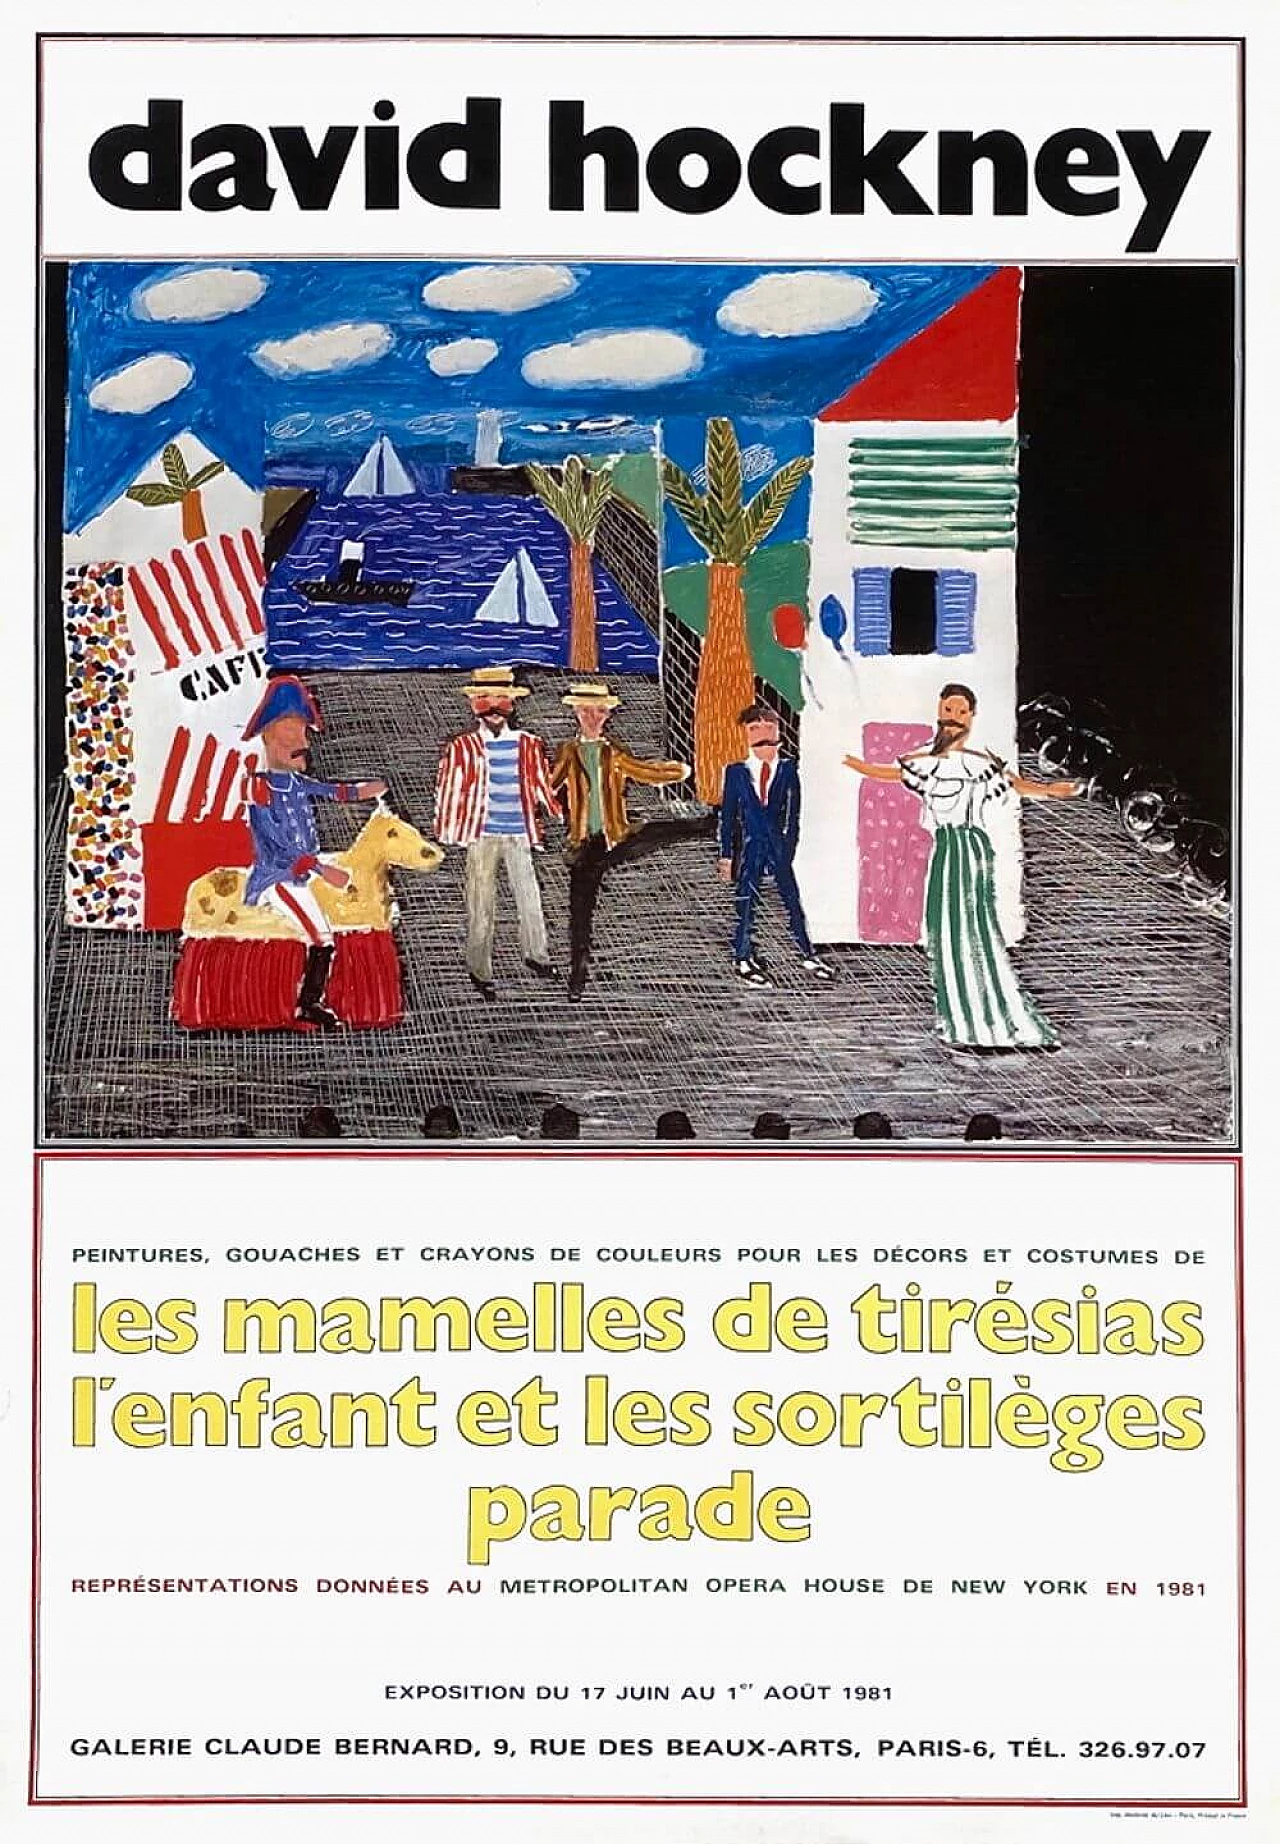 David Hockney Exhibition Poster, 1981 1219446